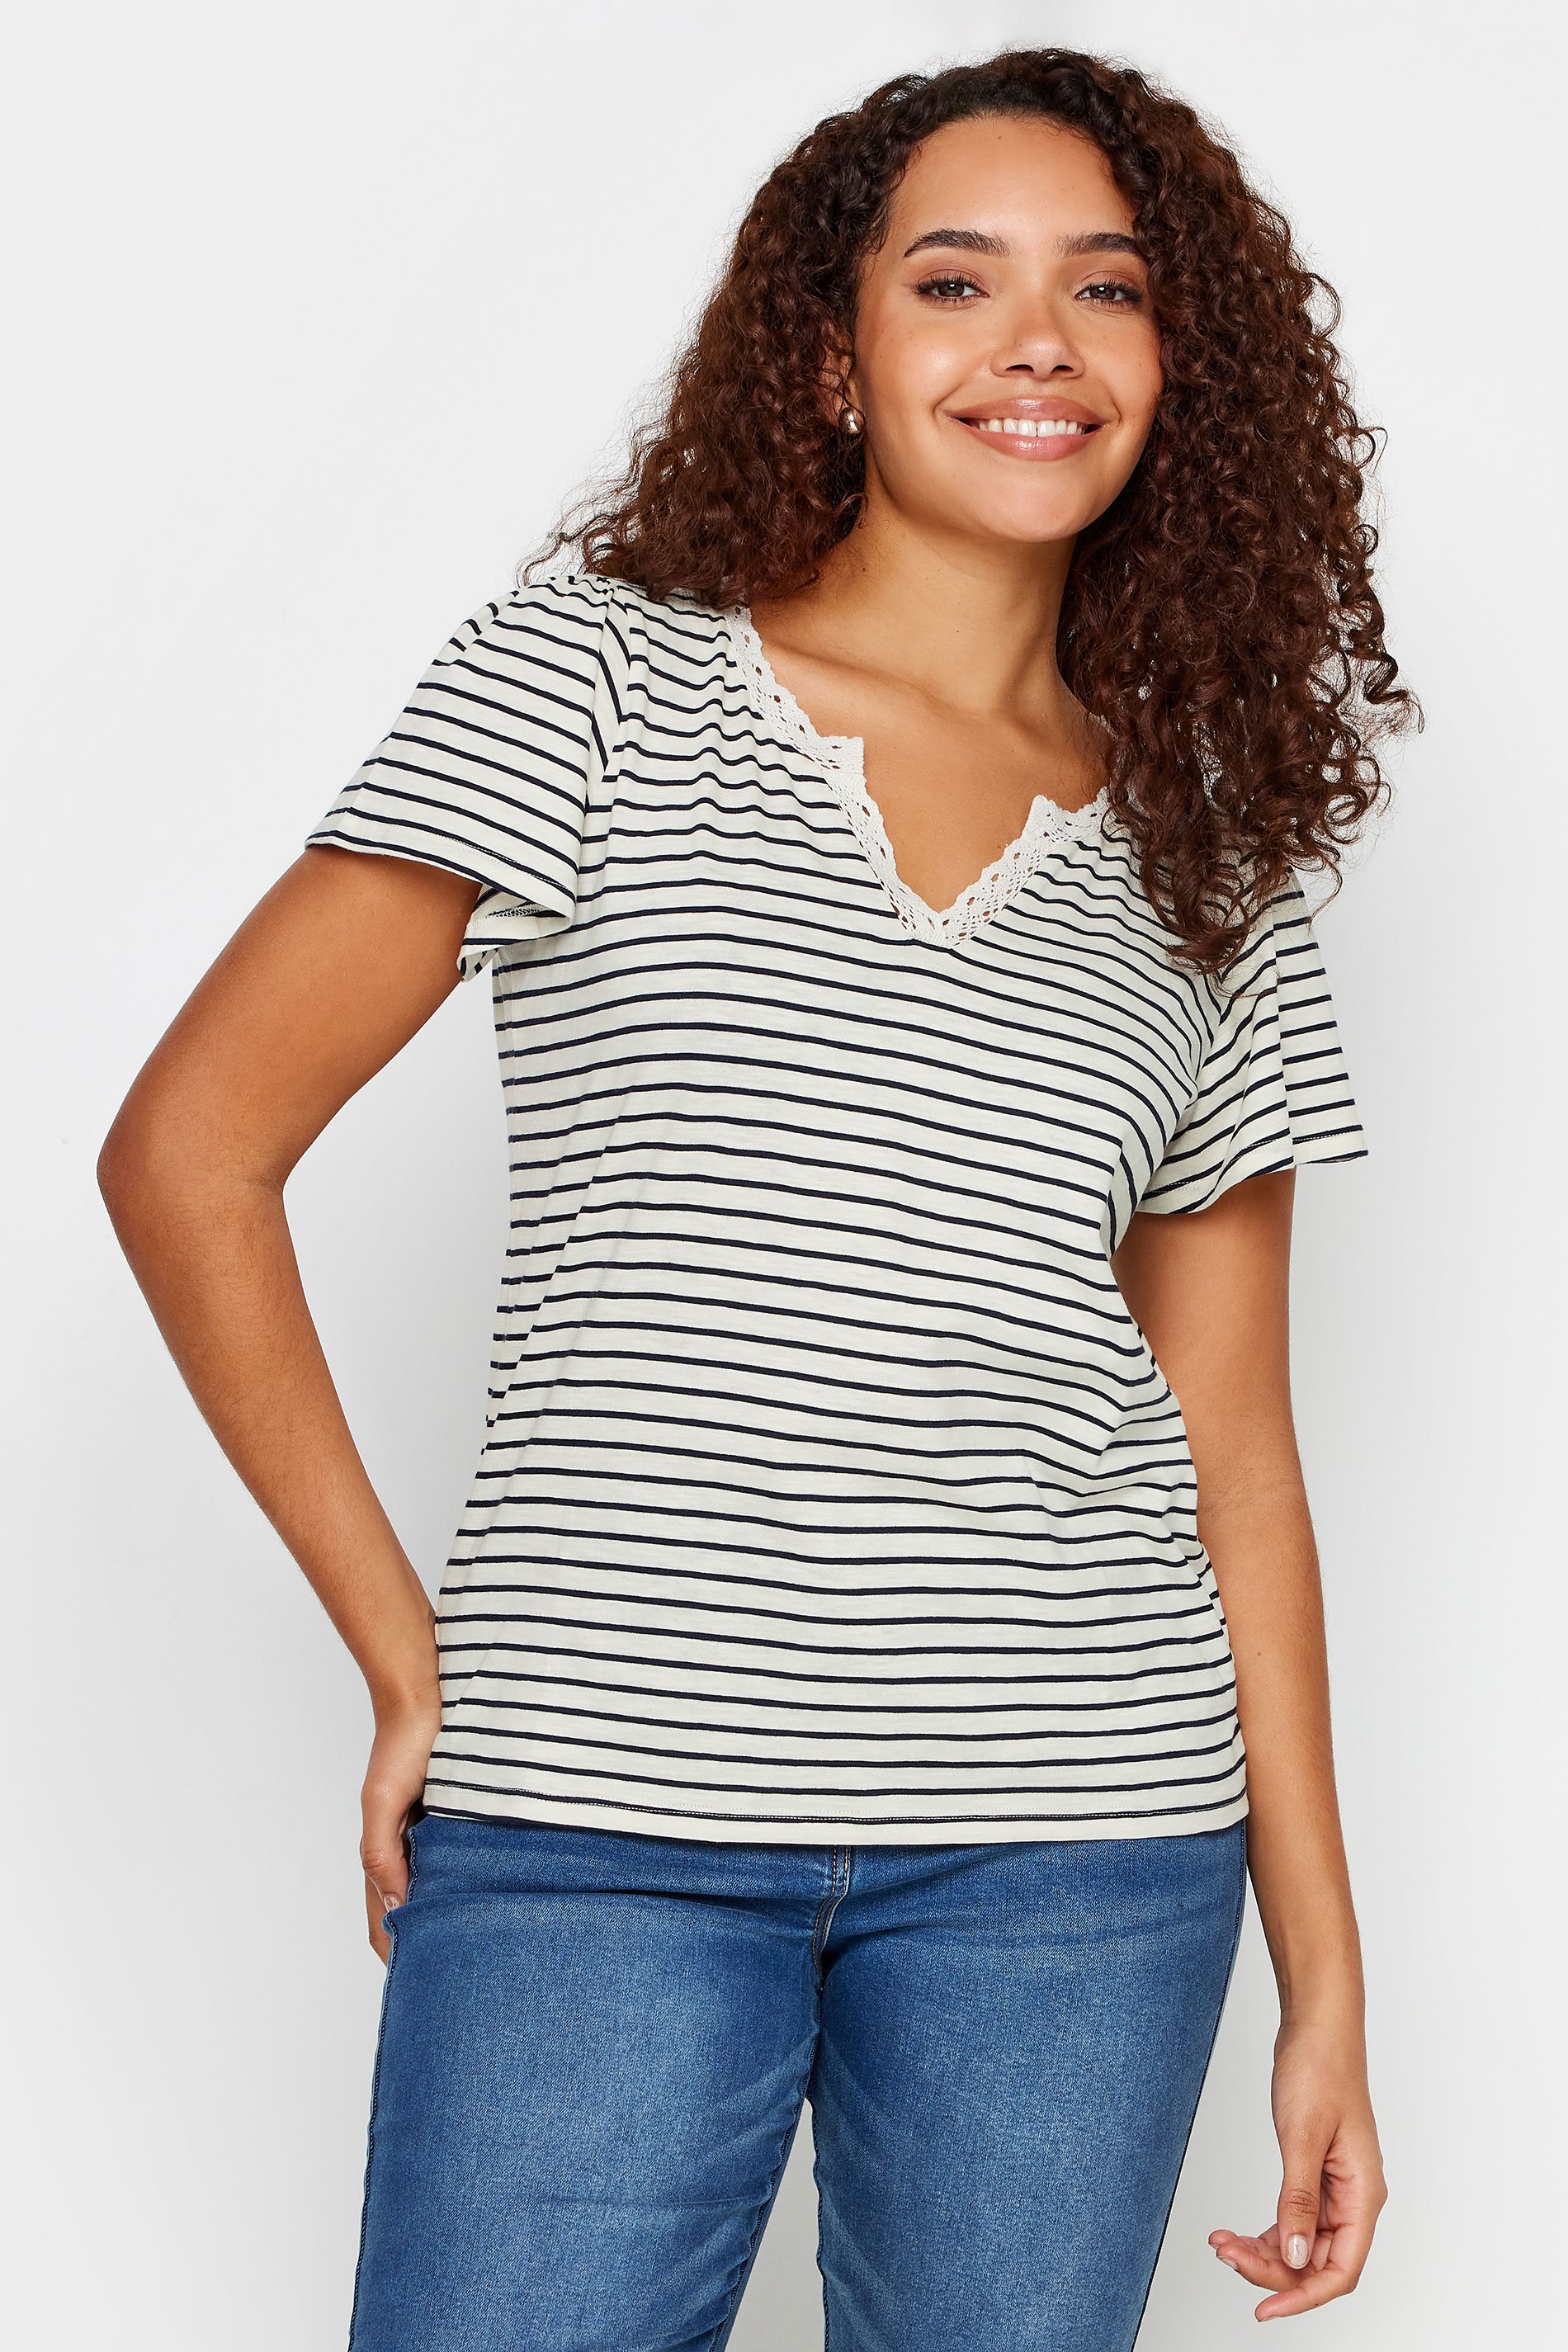 M&Co Black & White Striped Lace Trim T-Shirt | M&Co 1